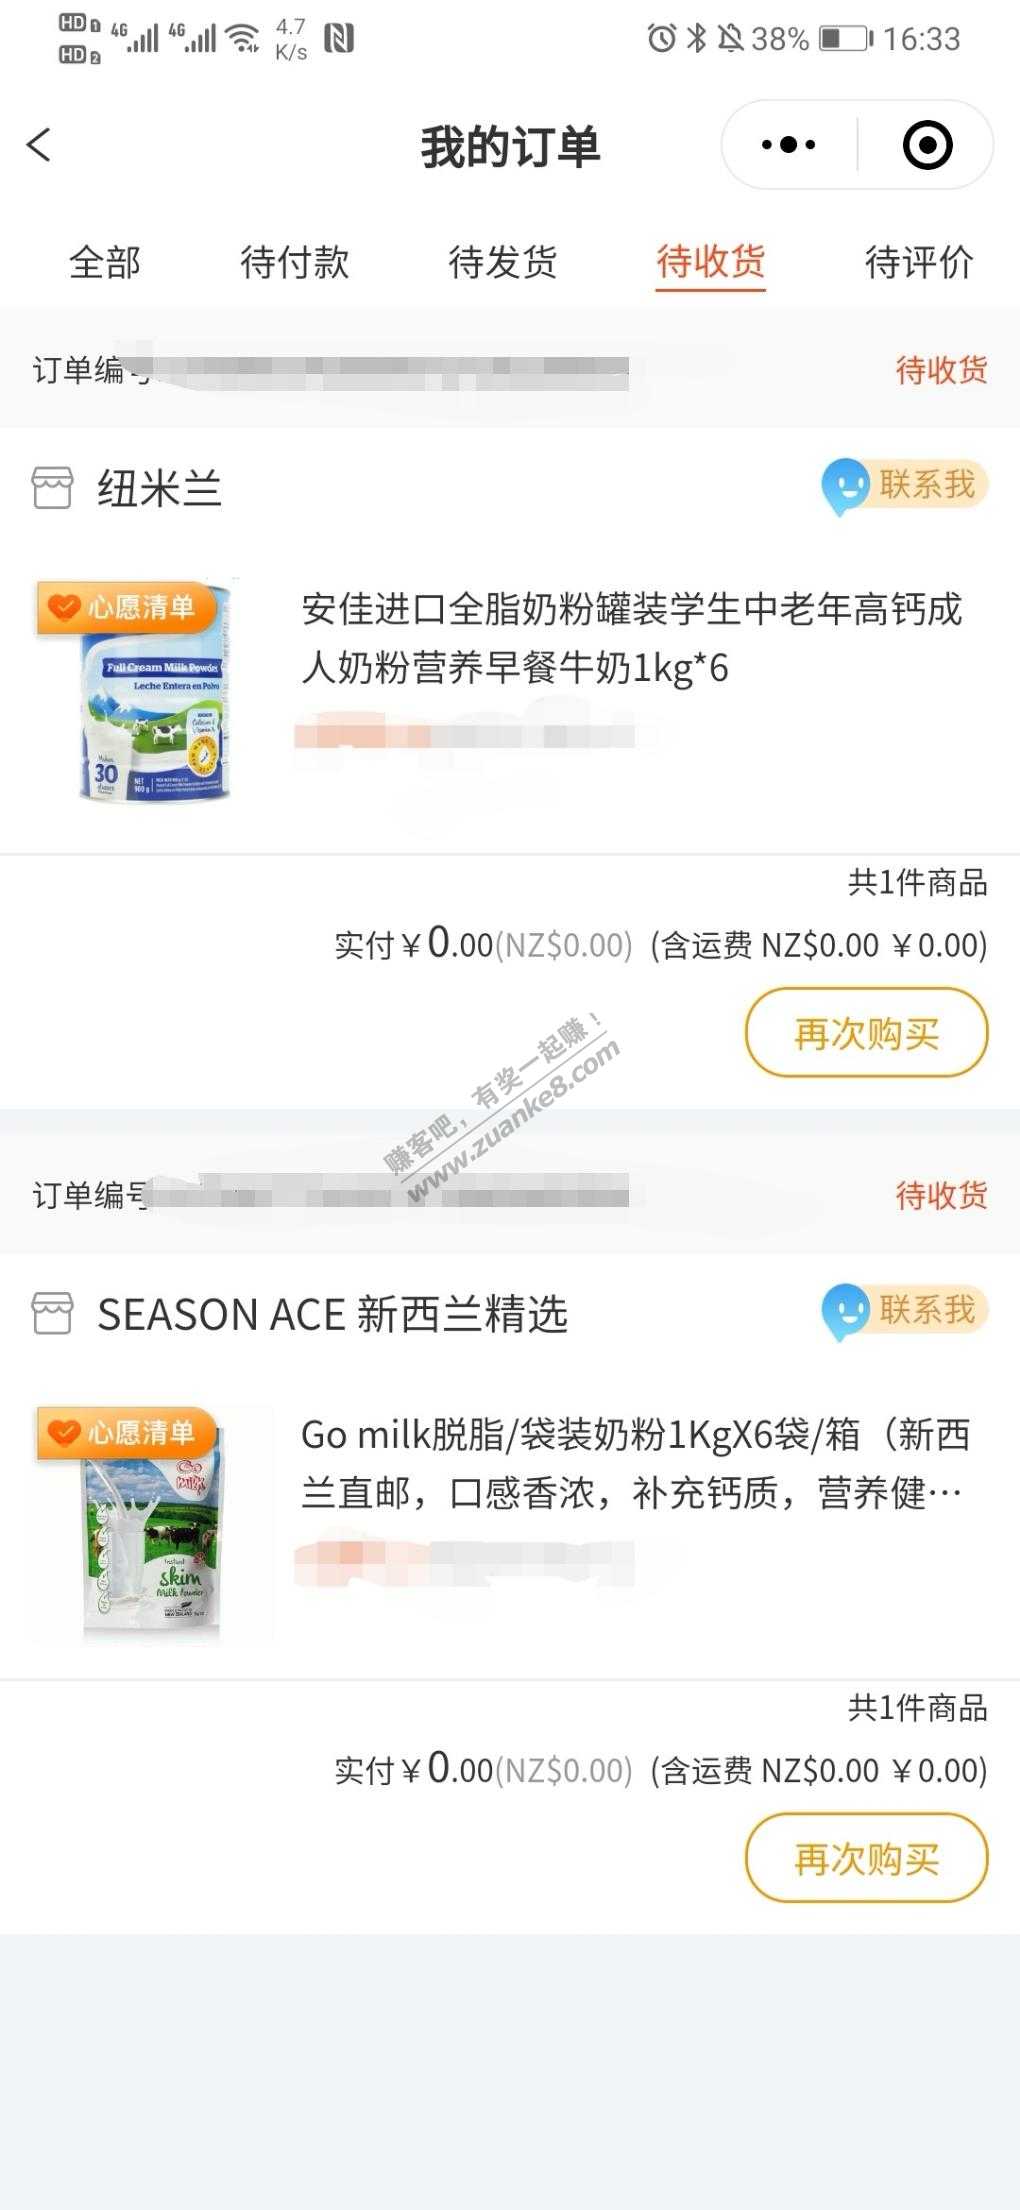 上次免费海涛的奶粉都发货了 感谢网友-惠小助(52huixz.com)